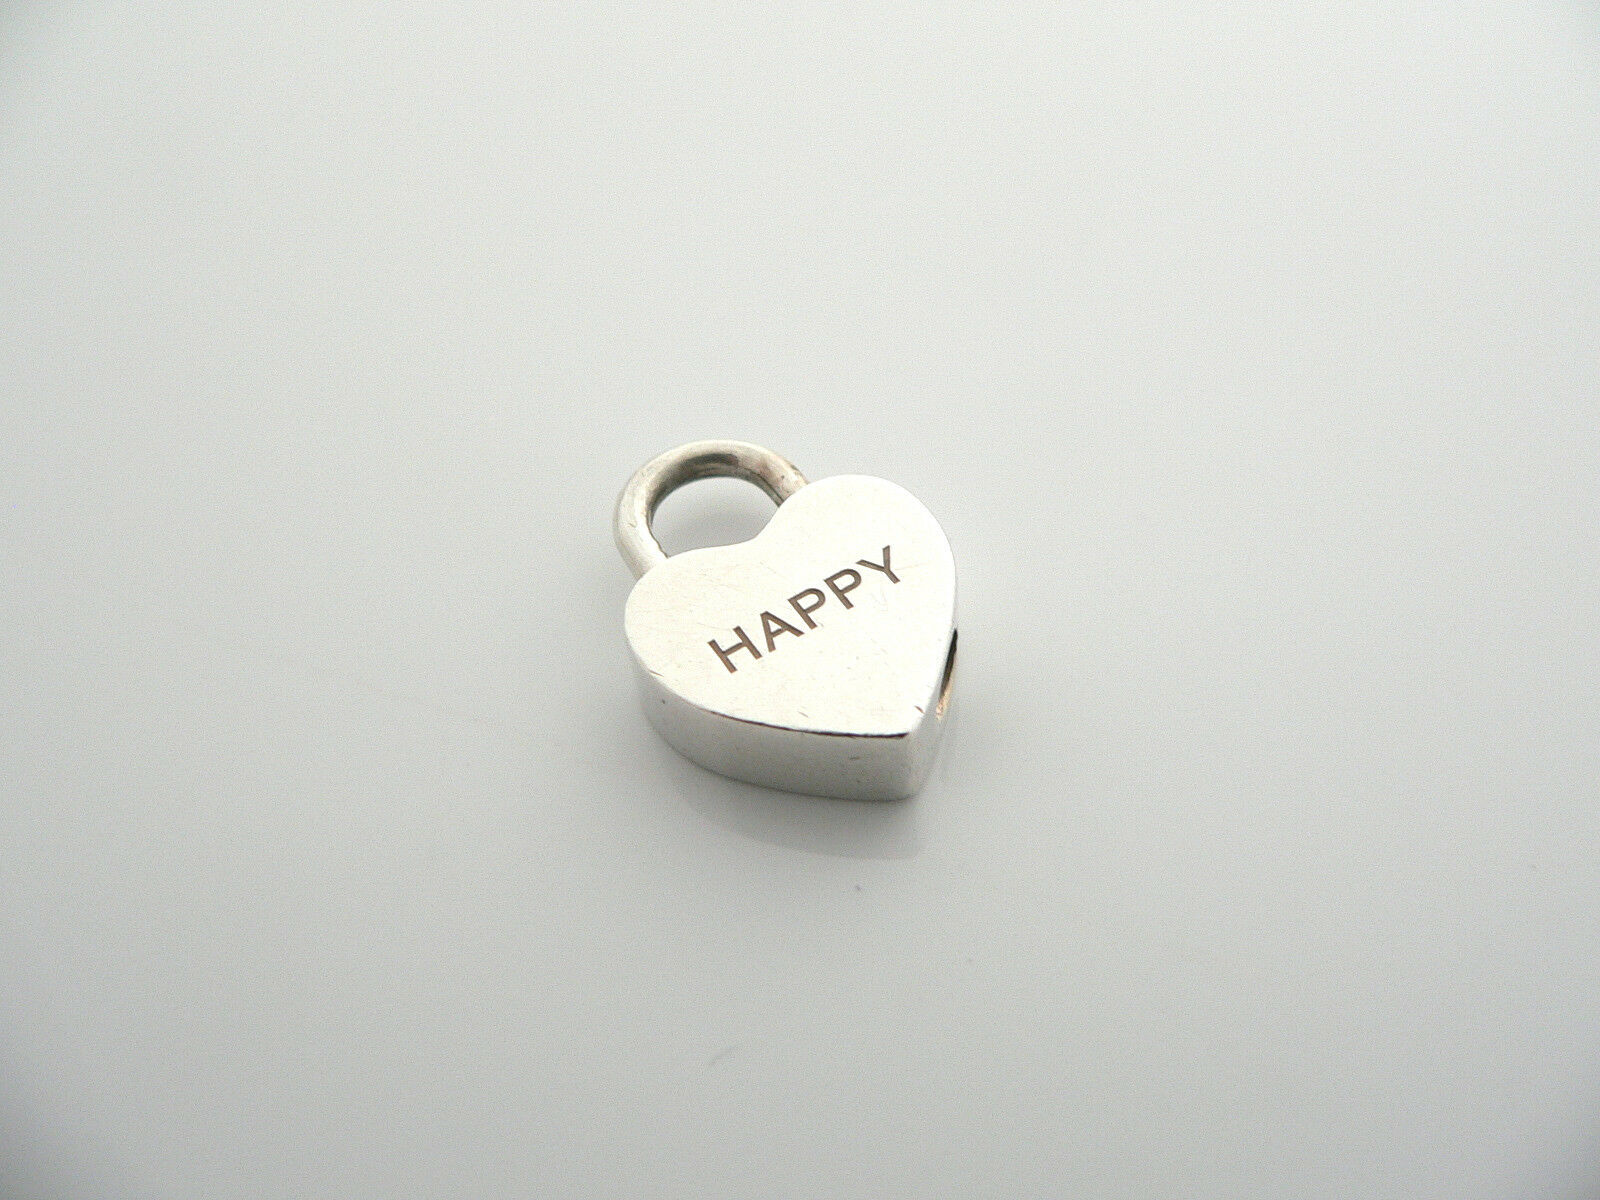 Tiffany & Co Silver HAPPY Heart Padlock Pendant Charm Rare Gift Love